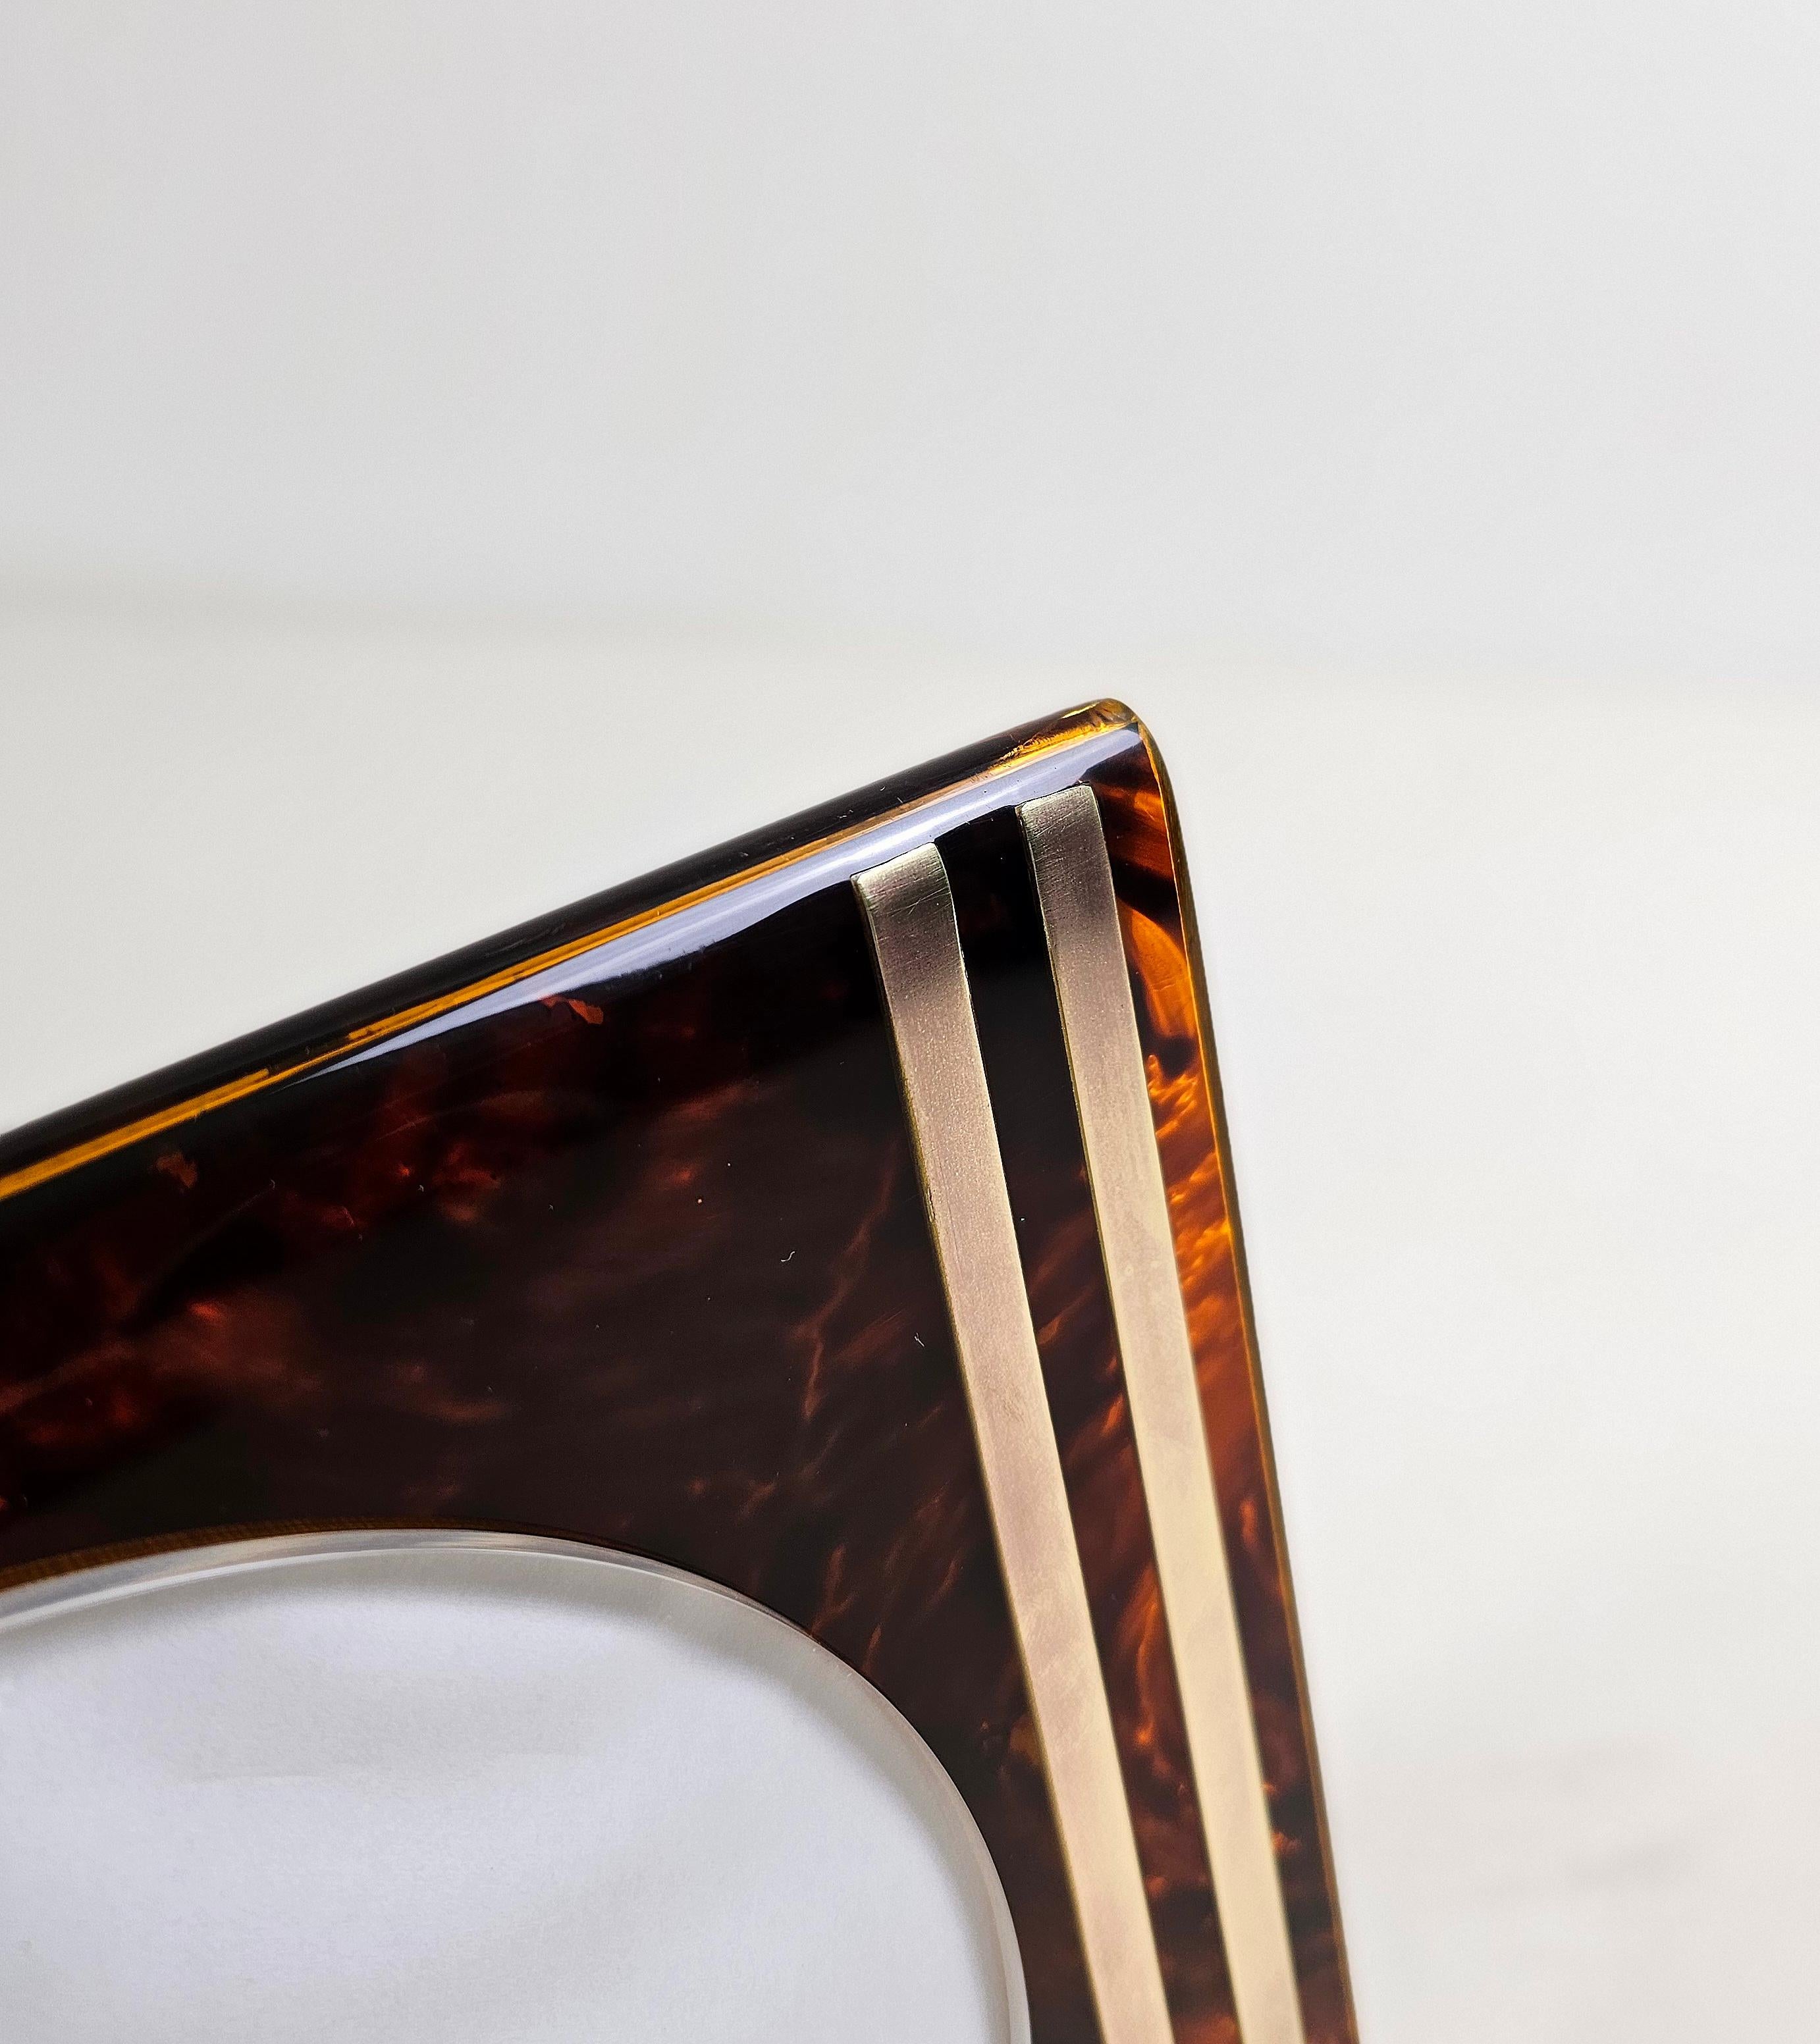 Cadre rectangulaire en lucite et laiton conçu et produit en Italie par l'équipe Guzzini. Le matériau Lucite, un type de résine acrylique connu pour sa transparence, historiquement utilisé pour les objets de luxe... Des motifs tachetés de brun et de